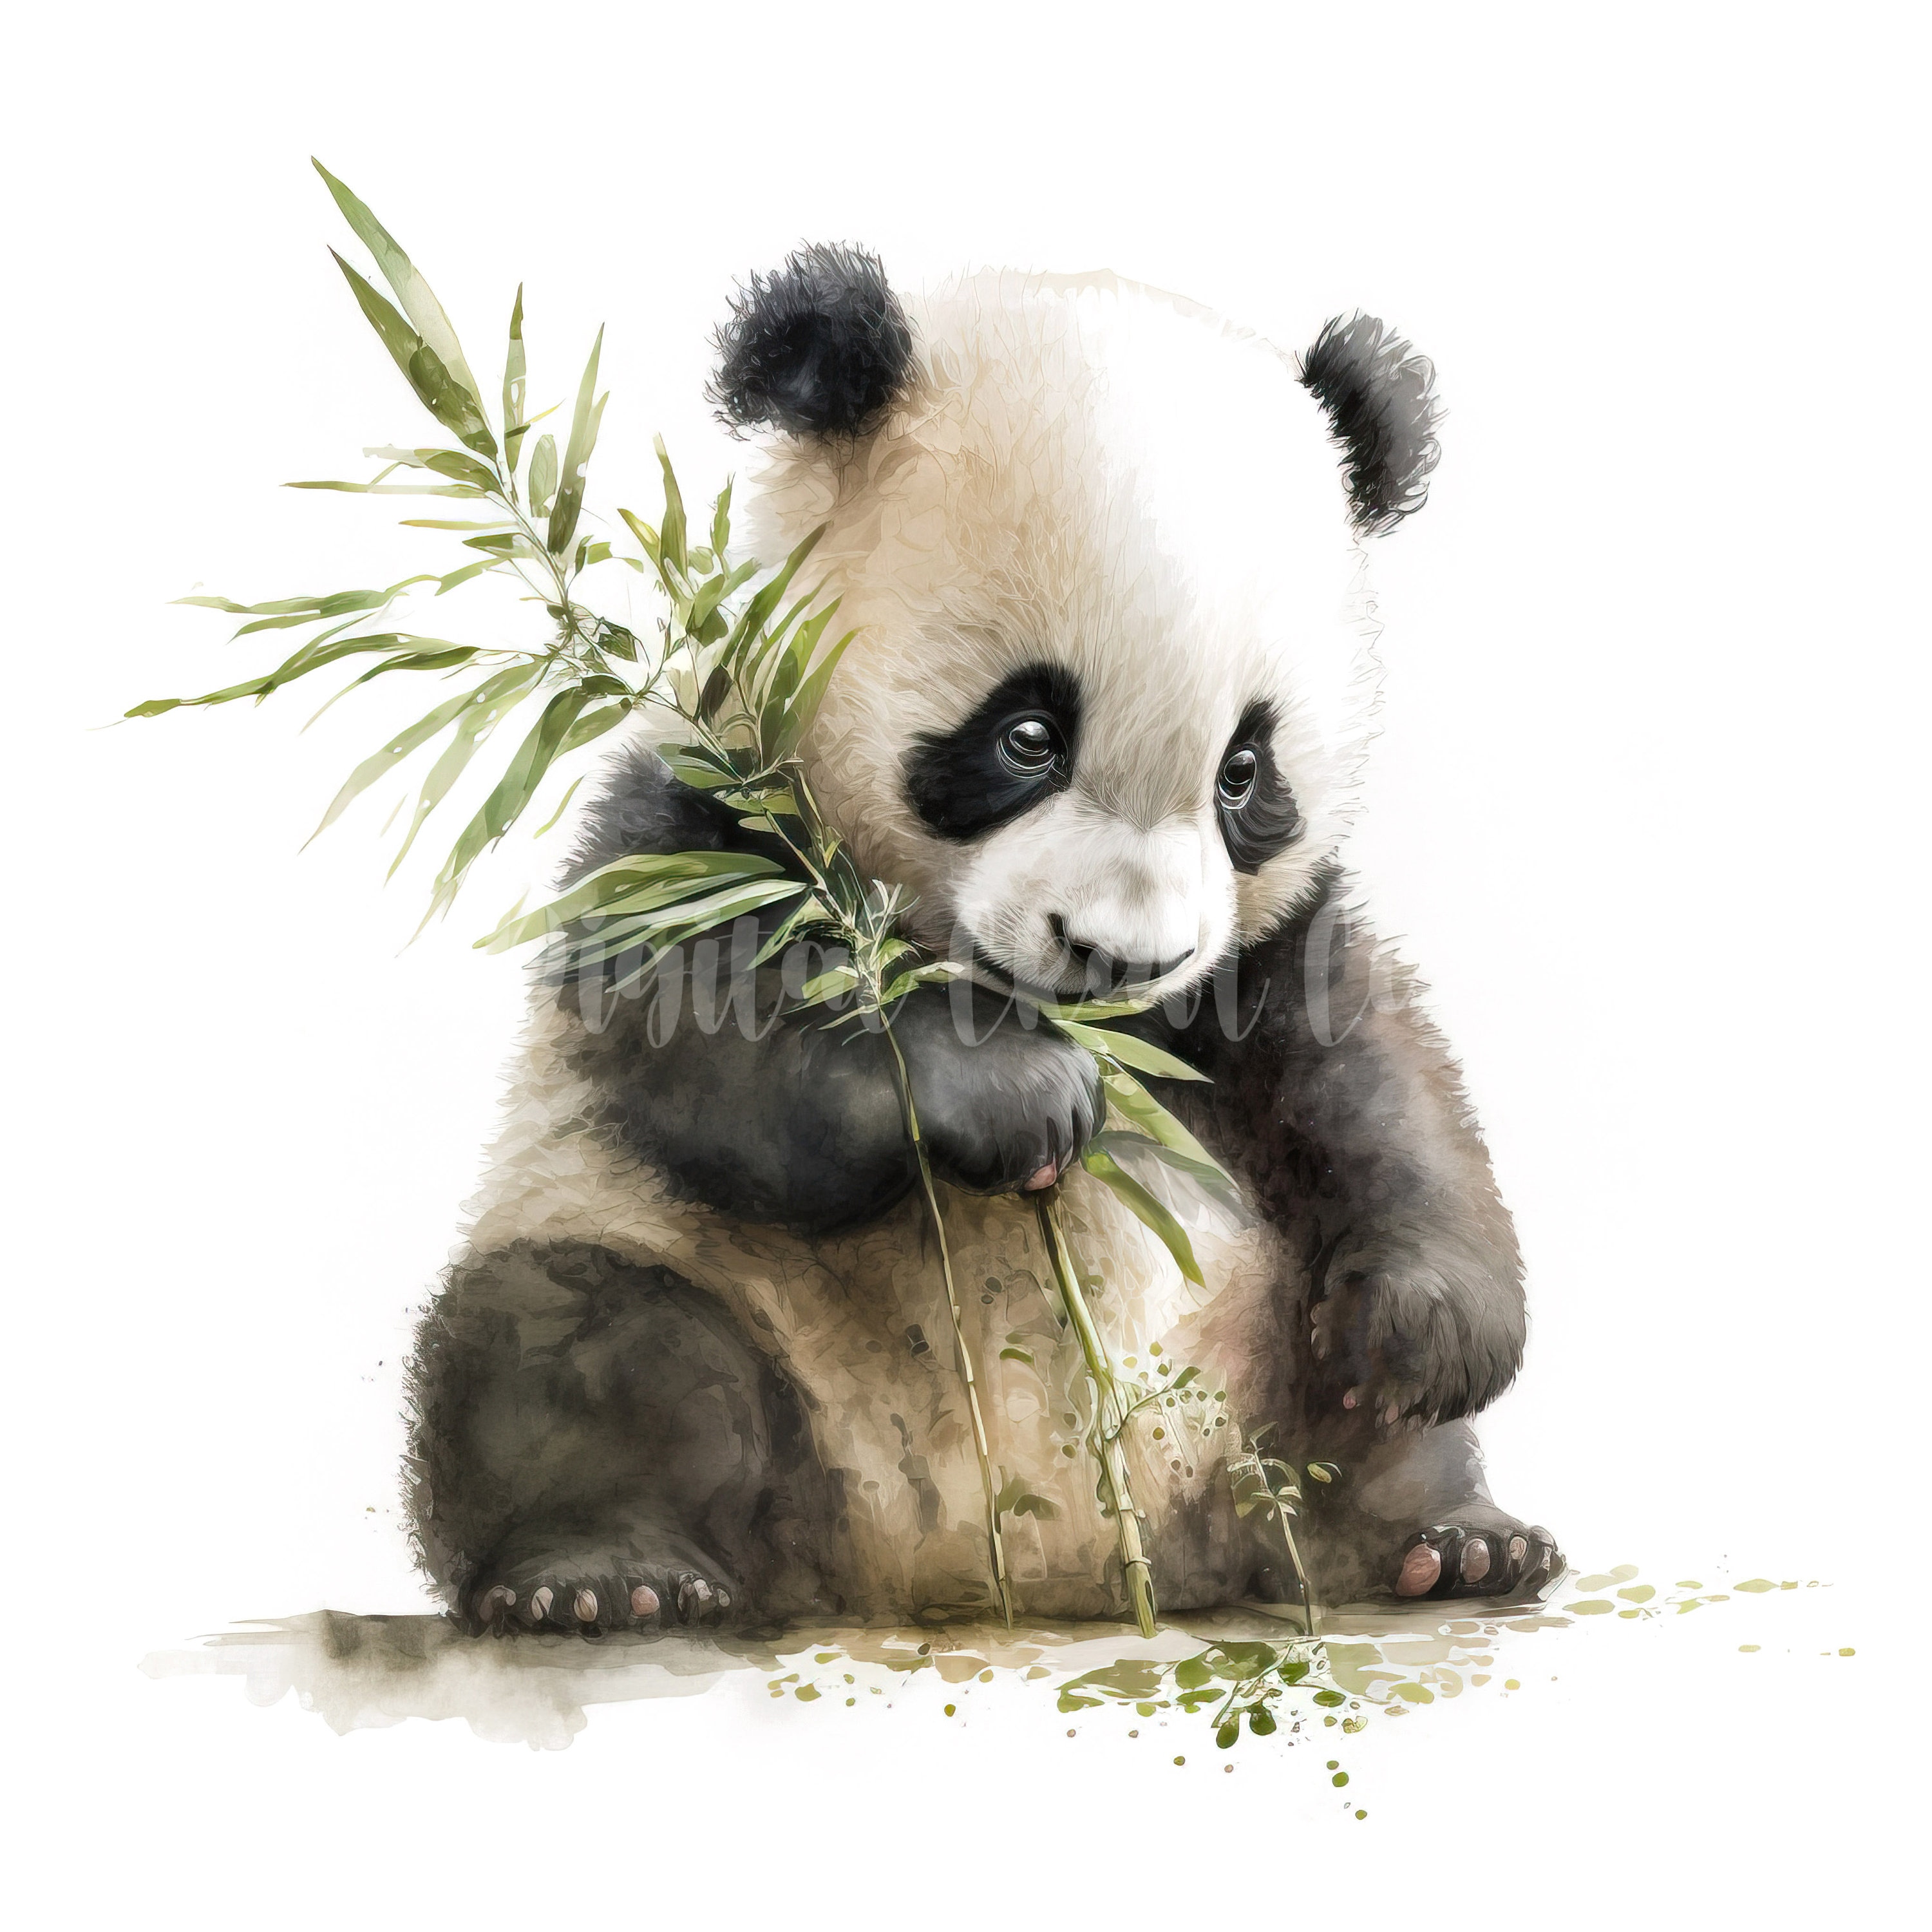 Arte Maurano: Panda vermelho - mixed media